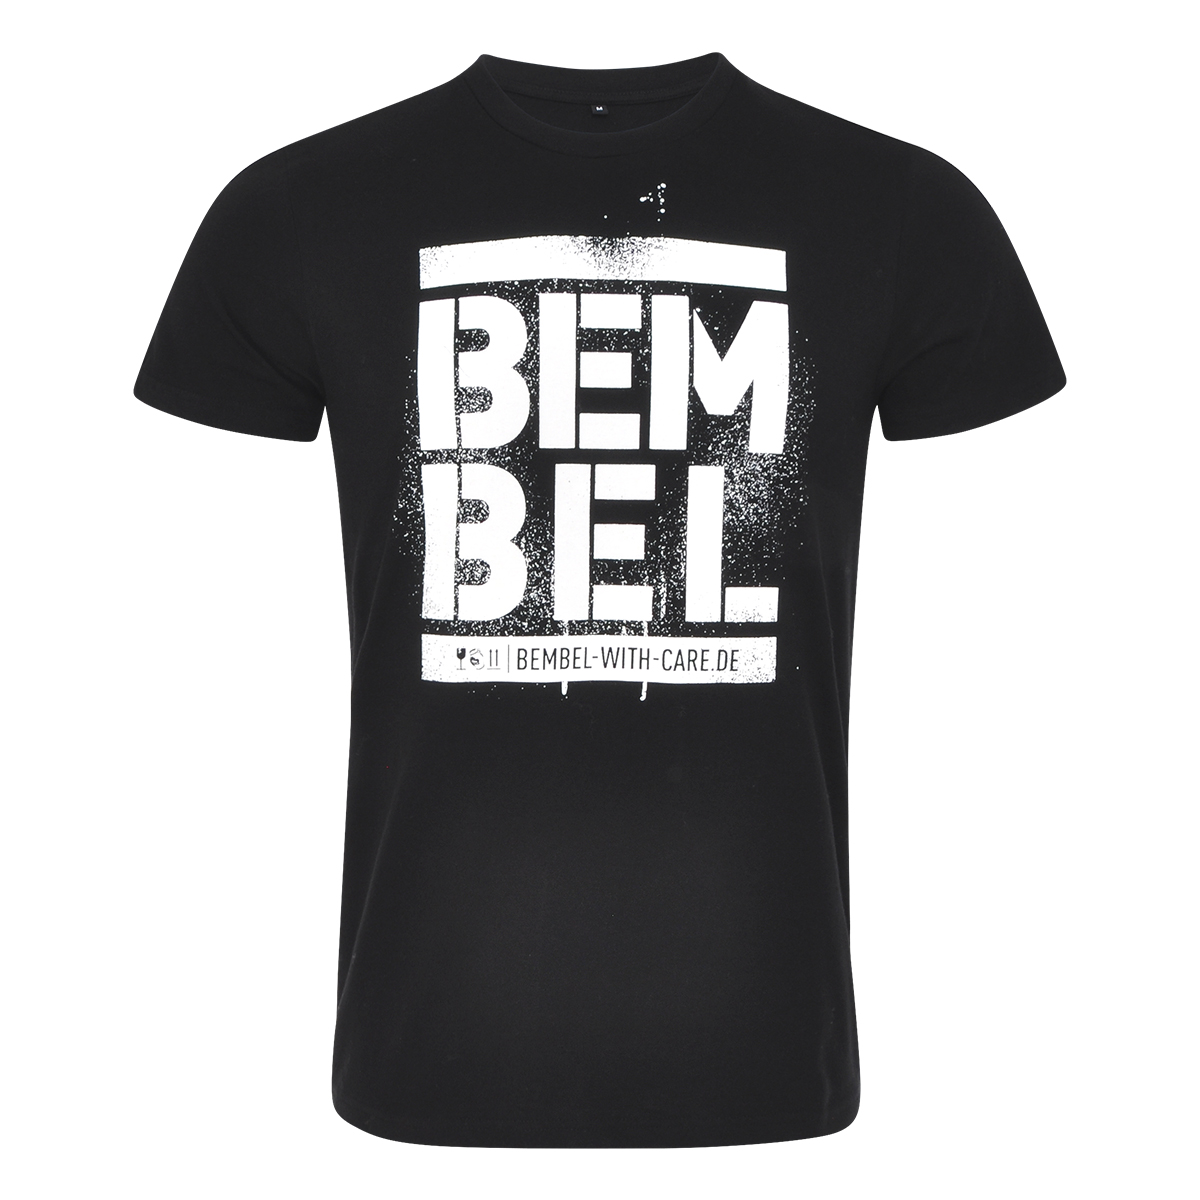 BEMBEL-WITH-CARE T-Shirt BEM|BEL Produktbild Front, Apfelwein, Cider